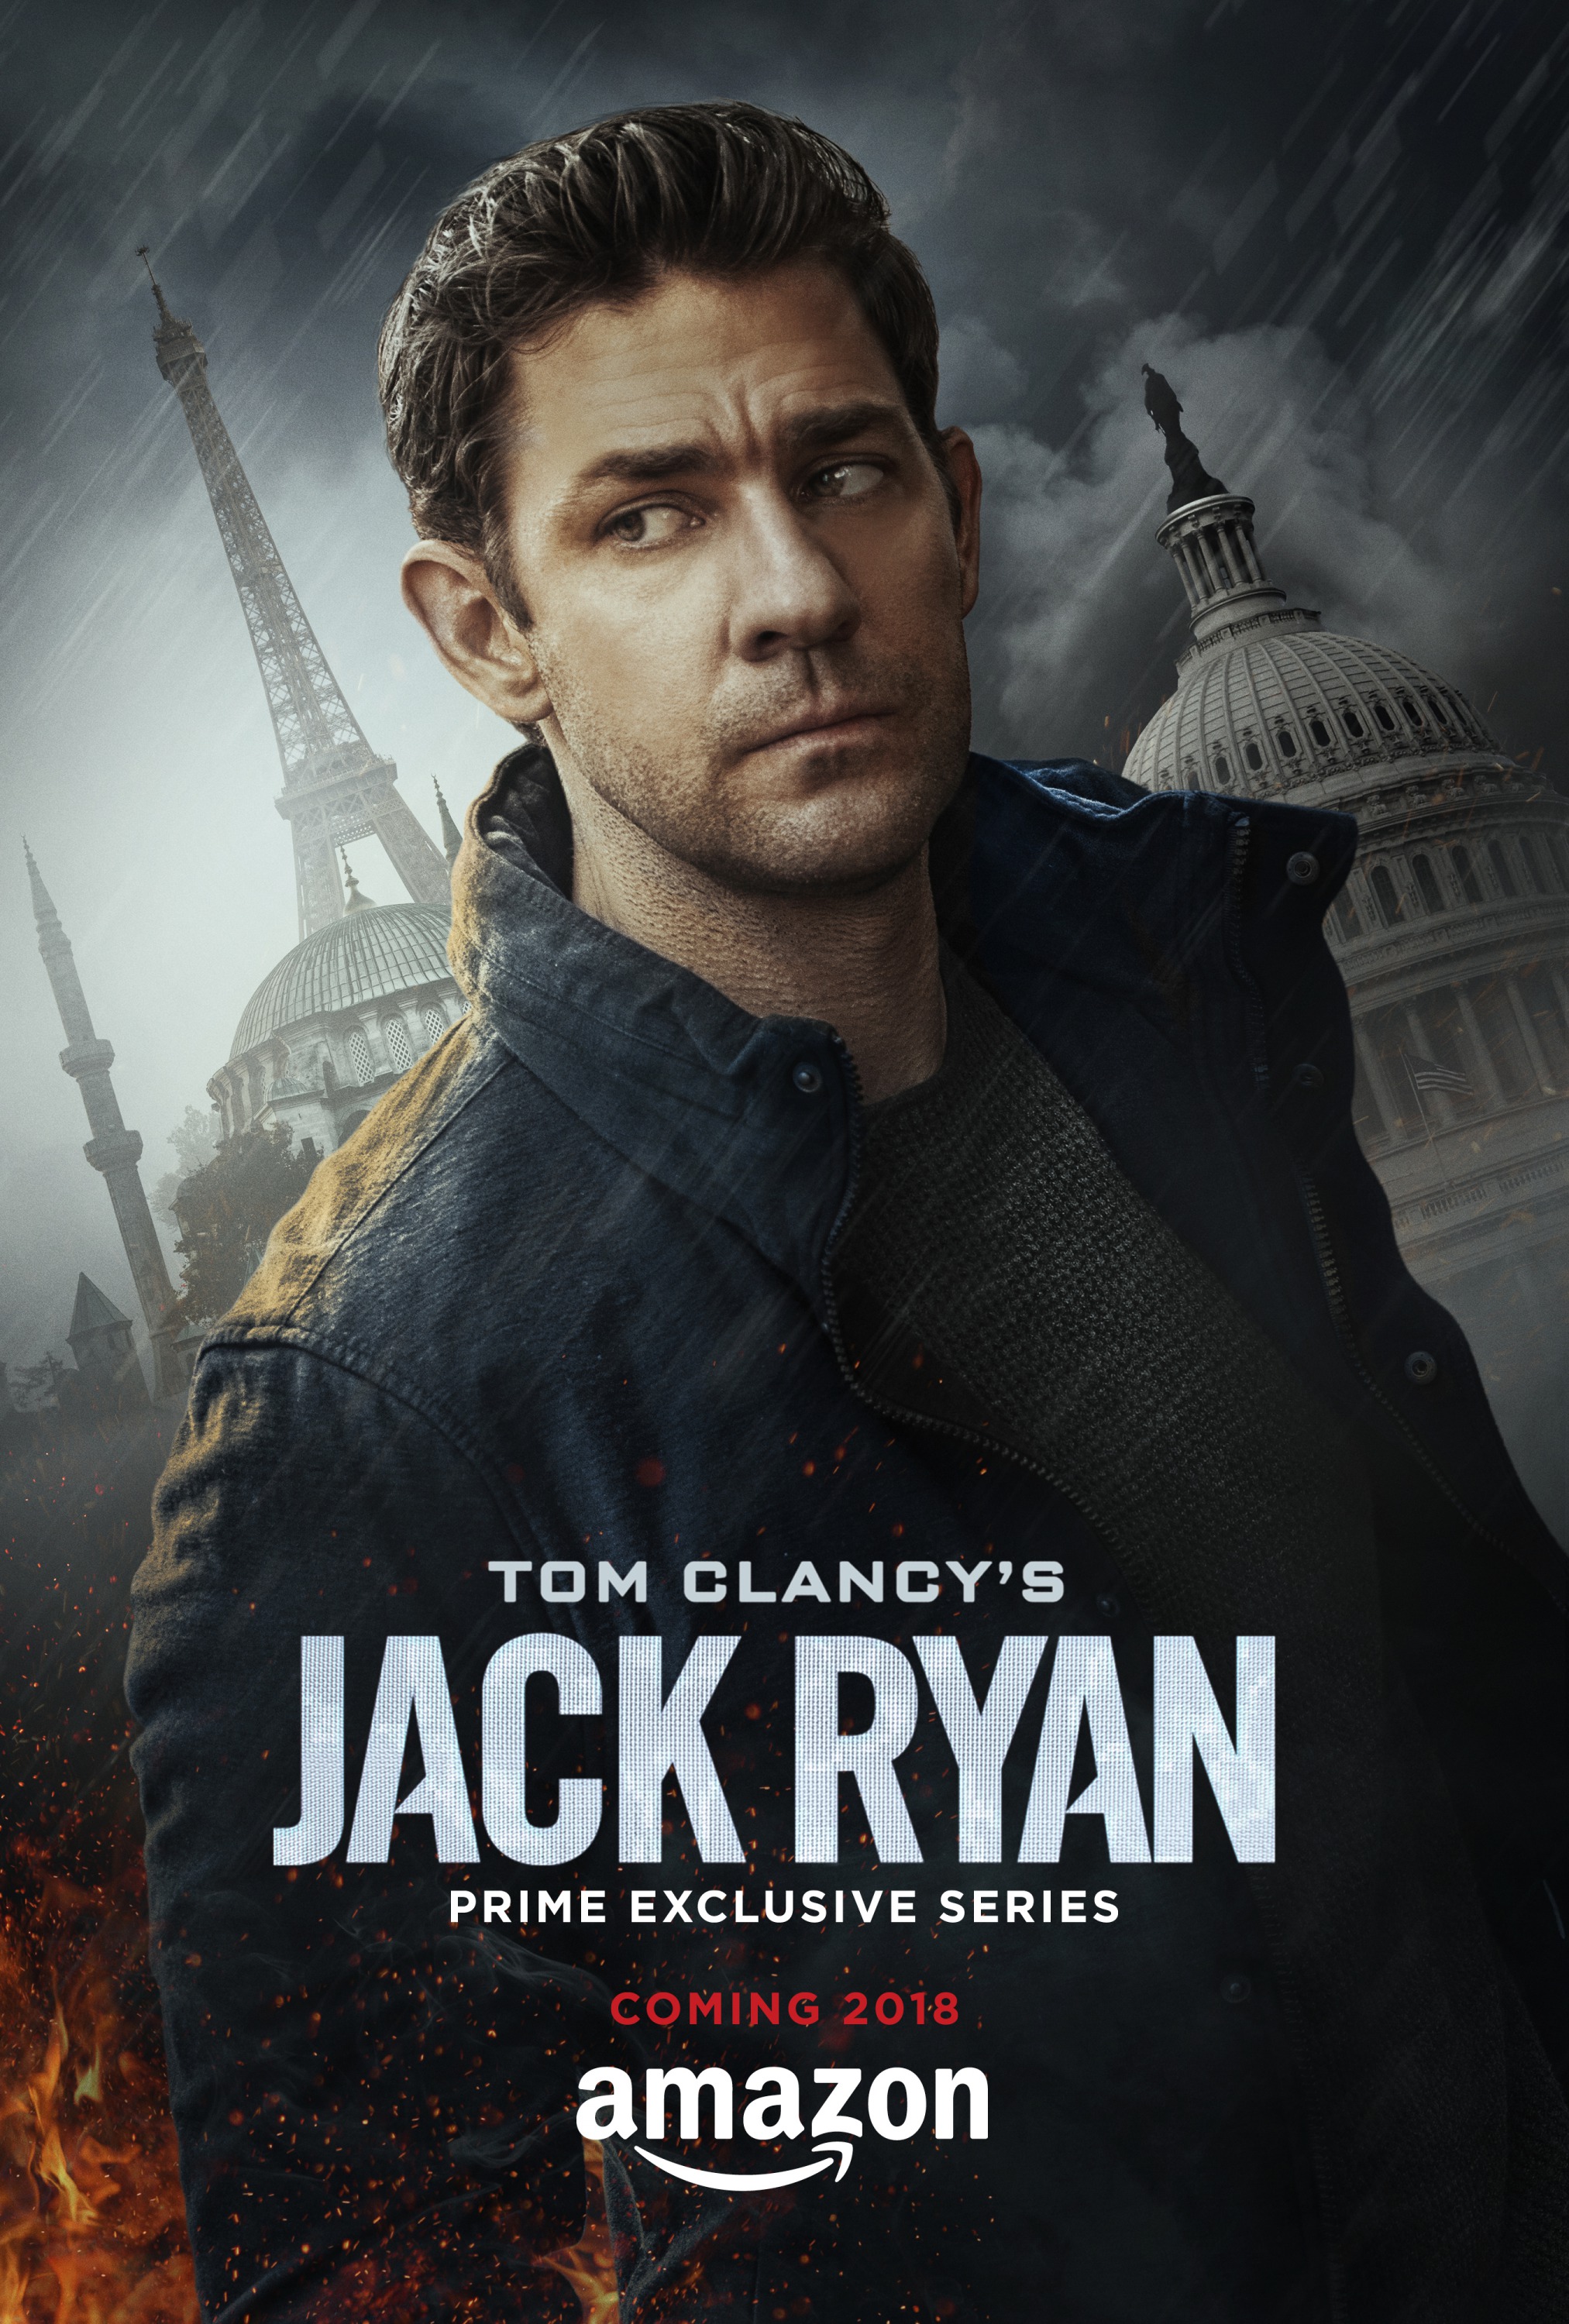 Tom Clancy's Jack Ryan | Jack Ryan Wiki | Fandom